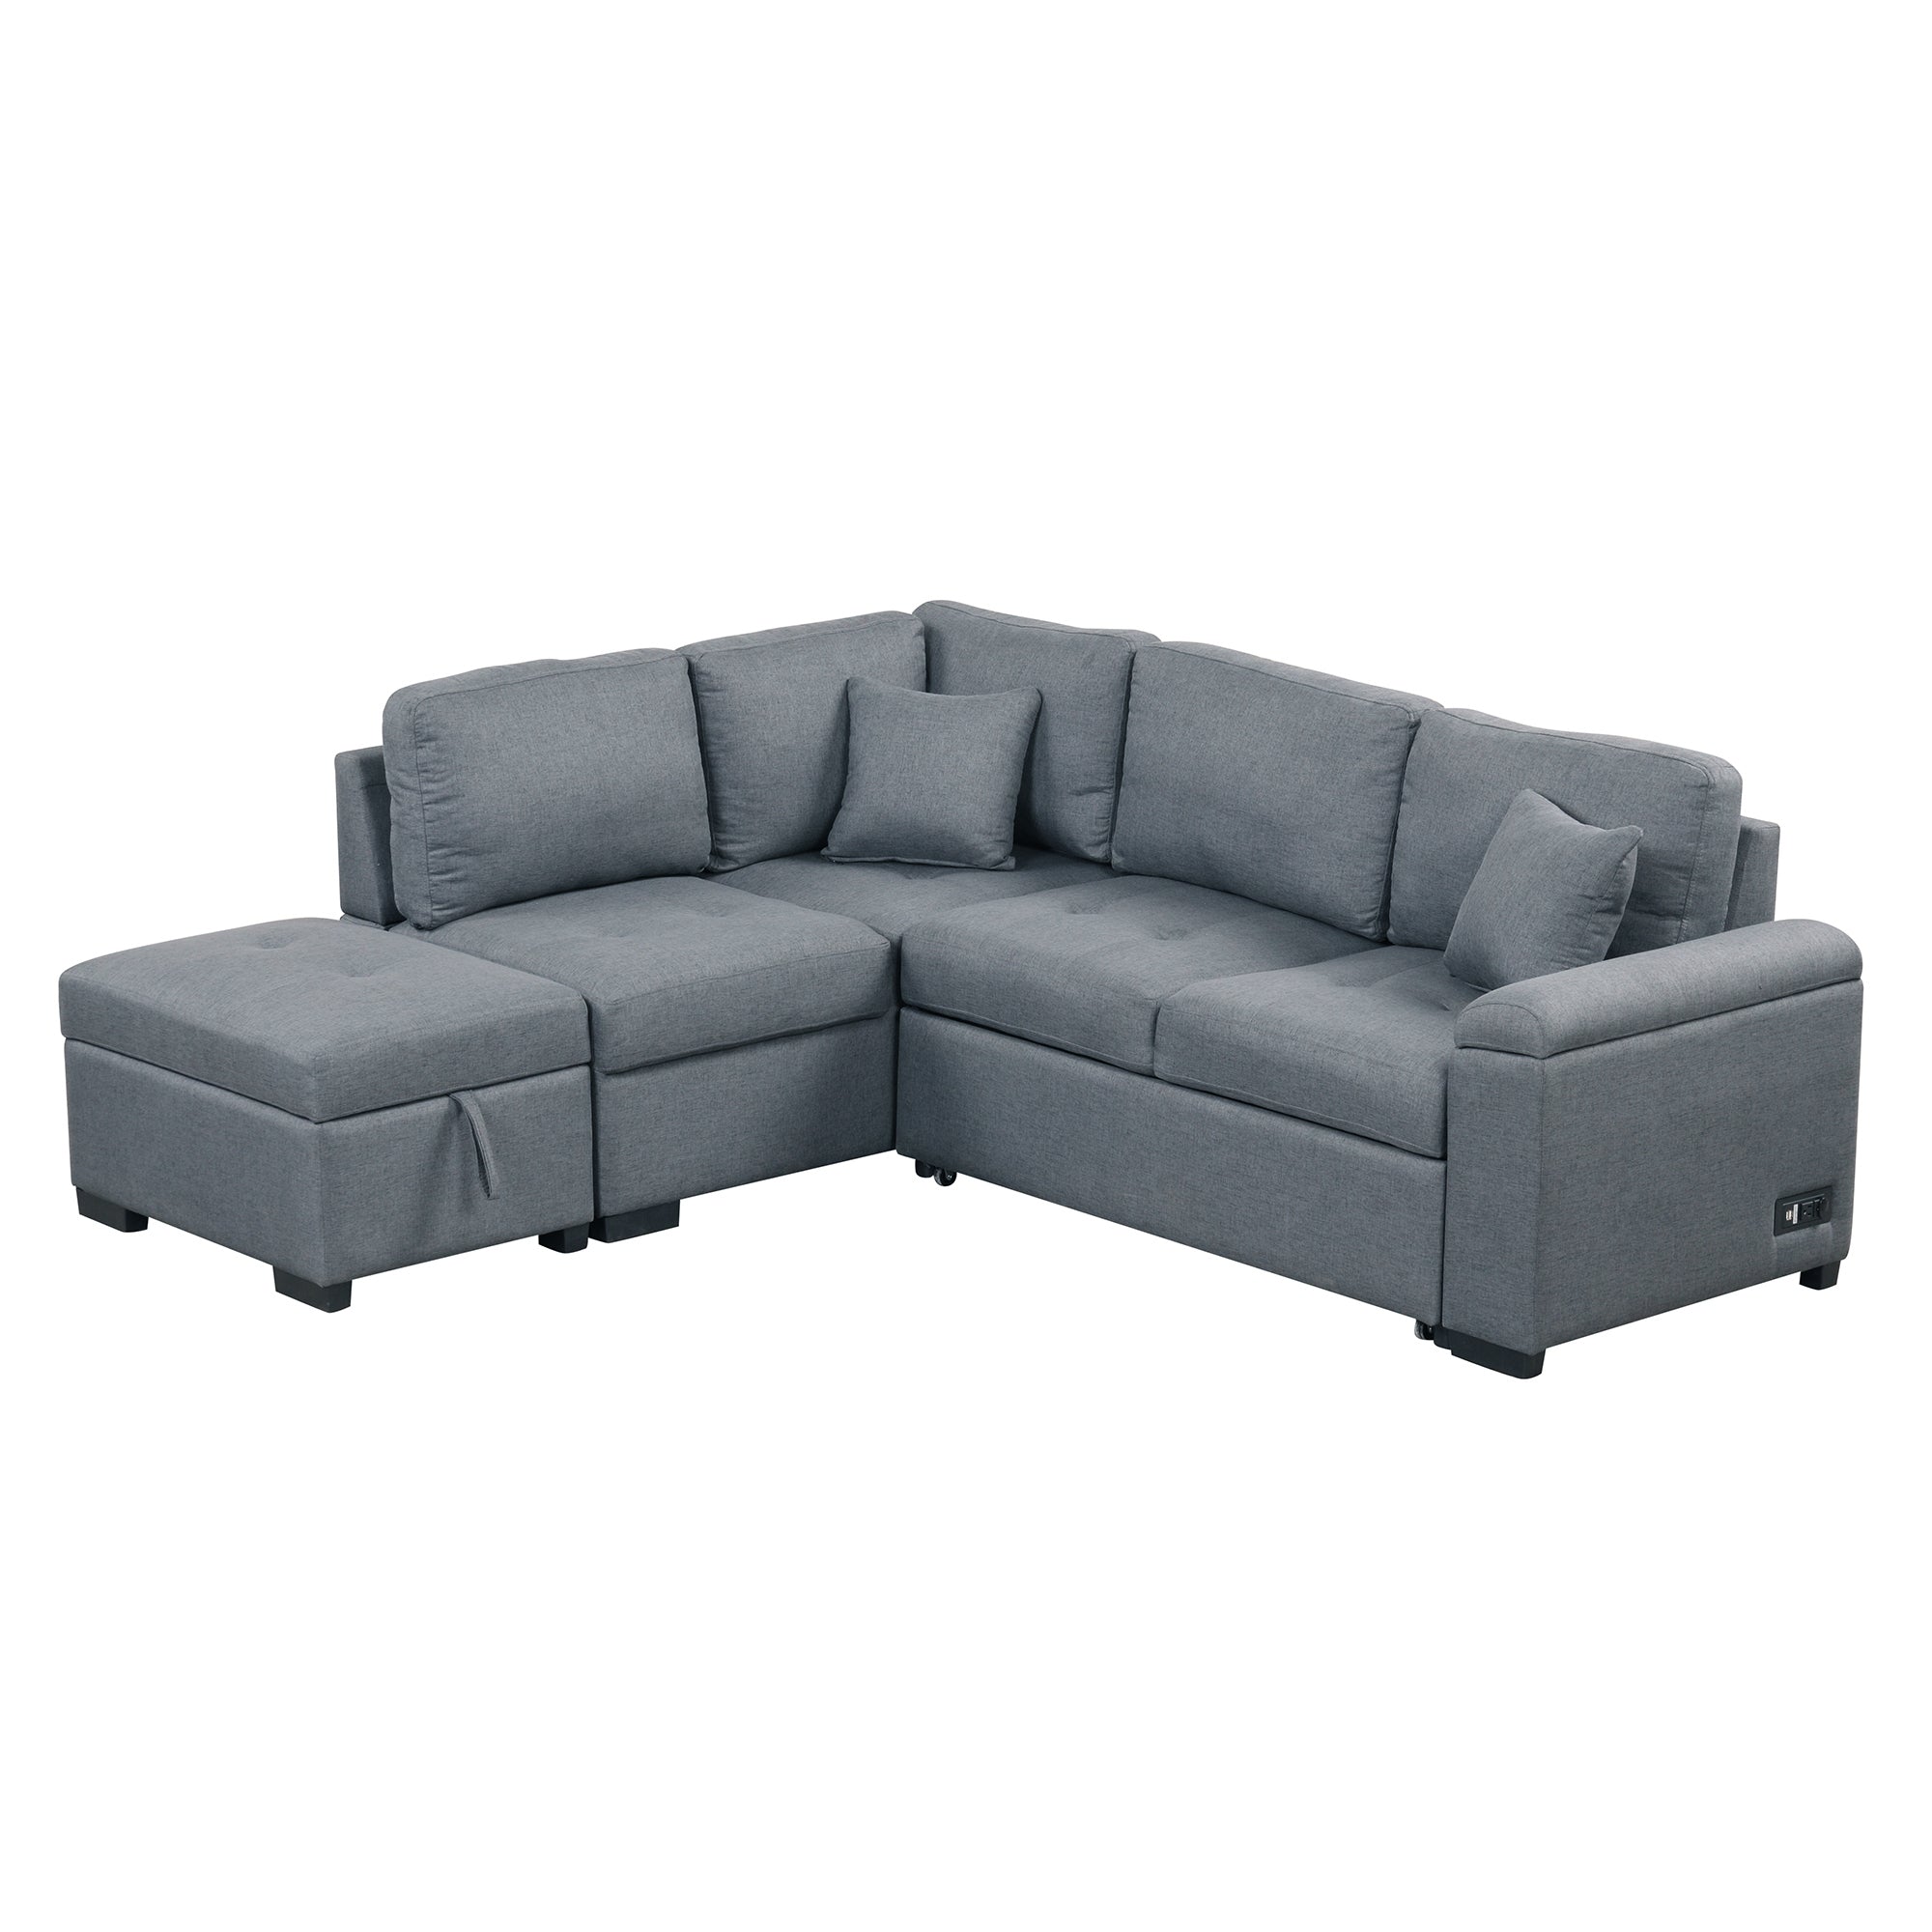 Gray L Shaped Velvet Sleeper Sectional Sofa